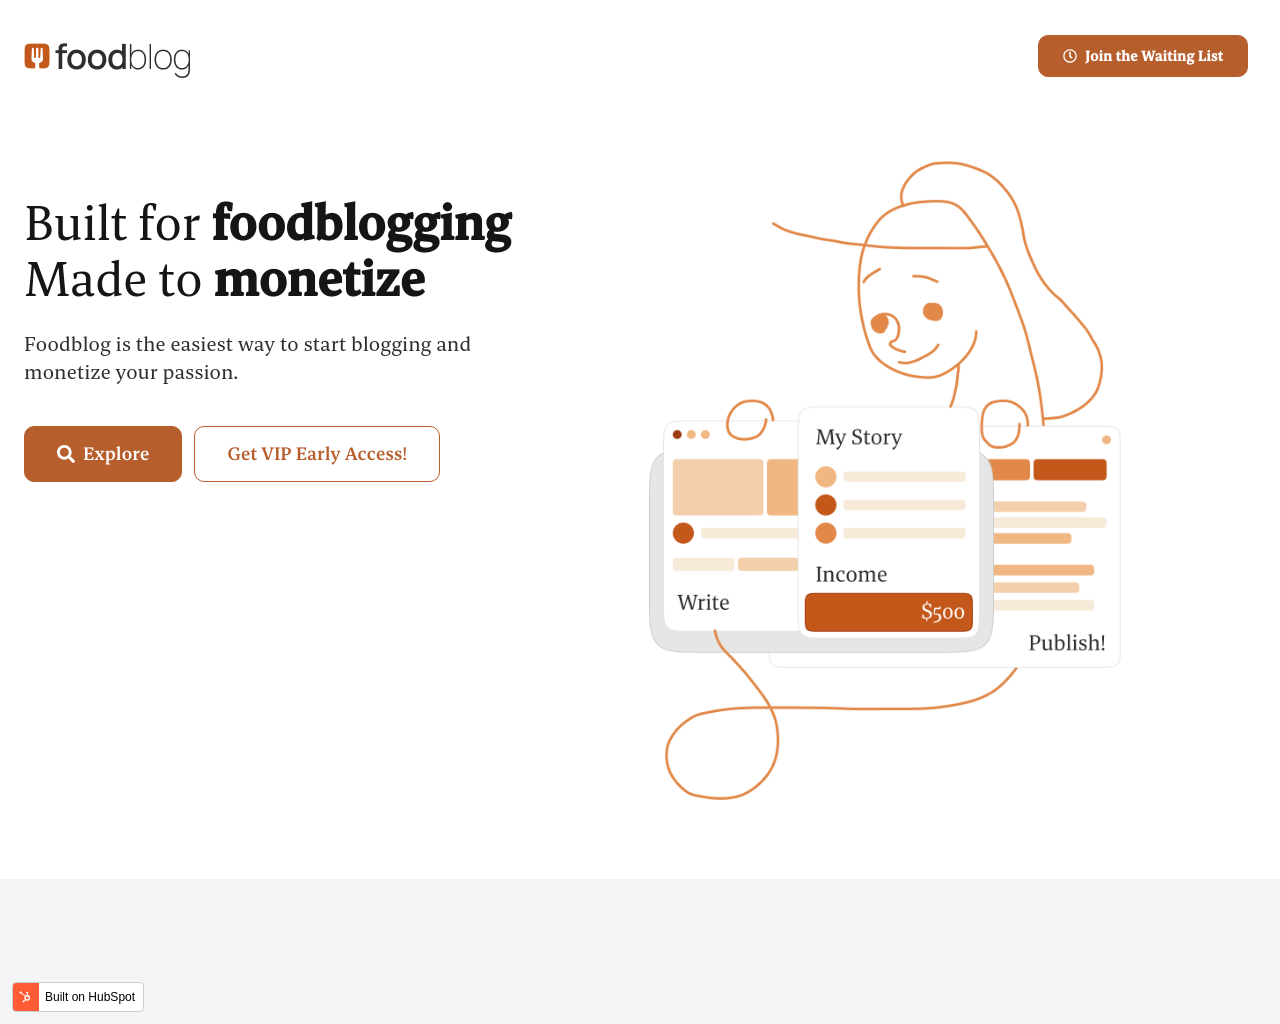 foodblog.com